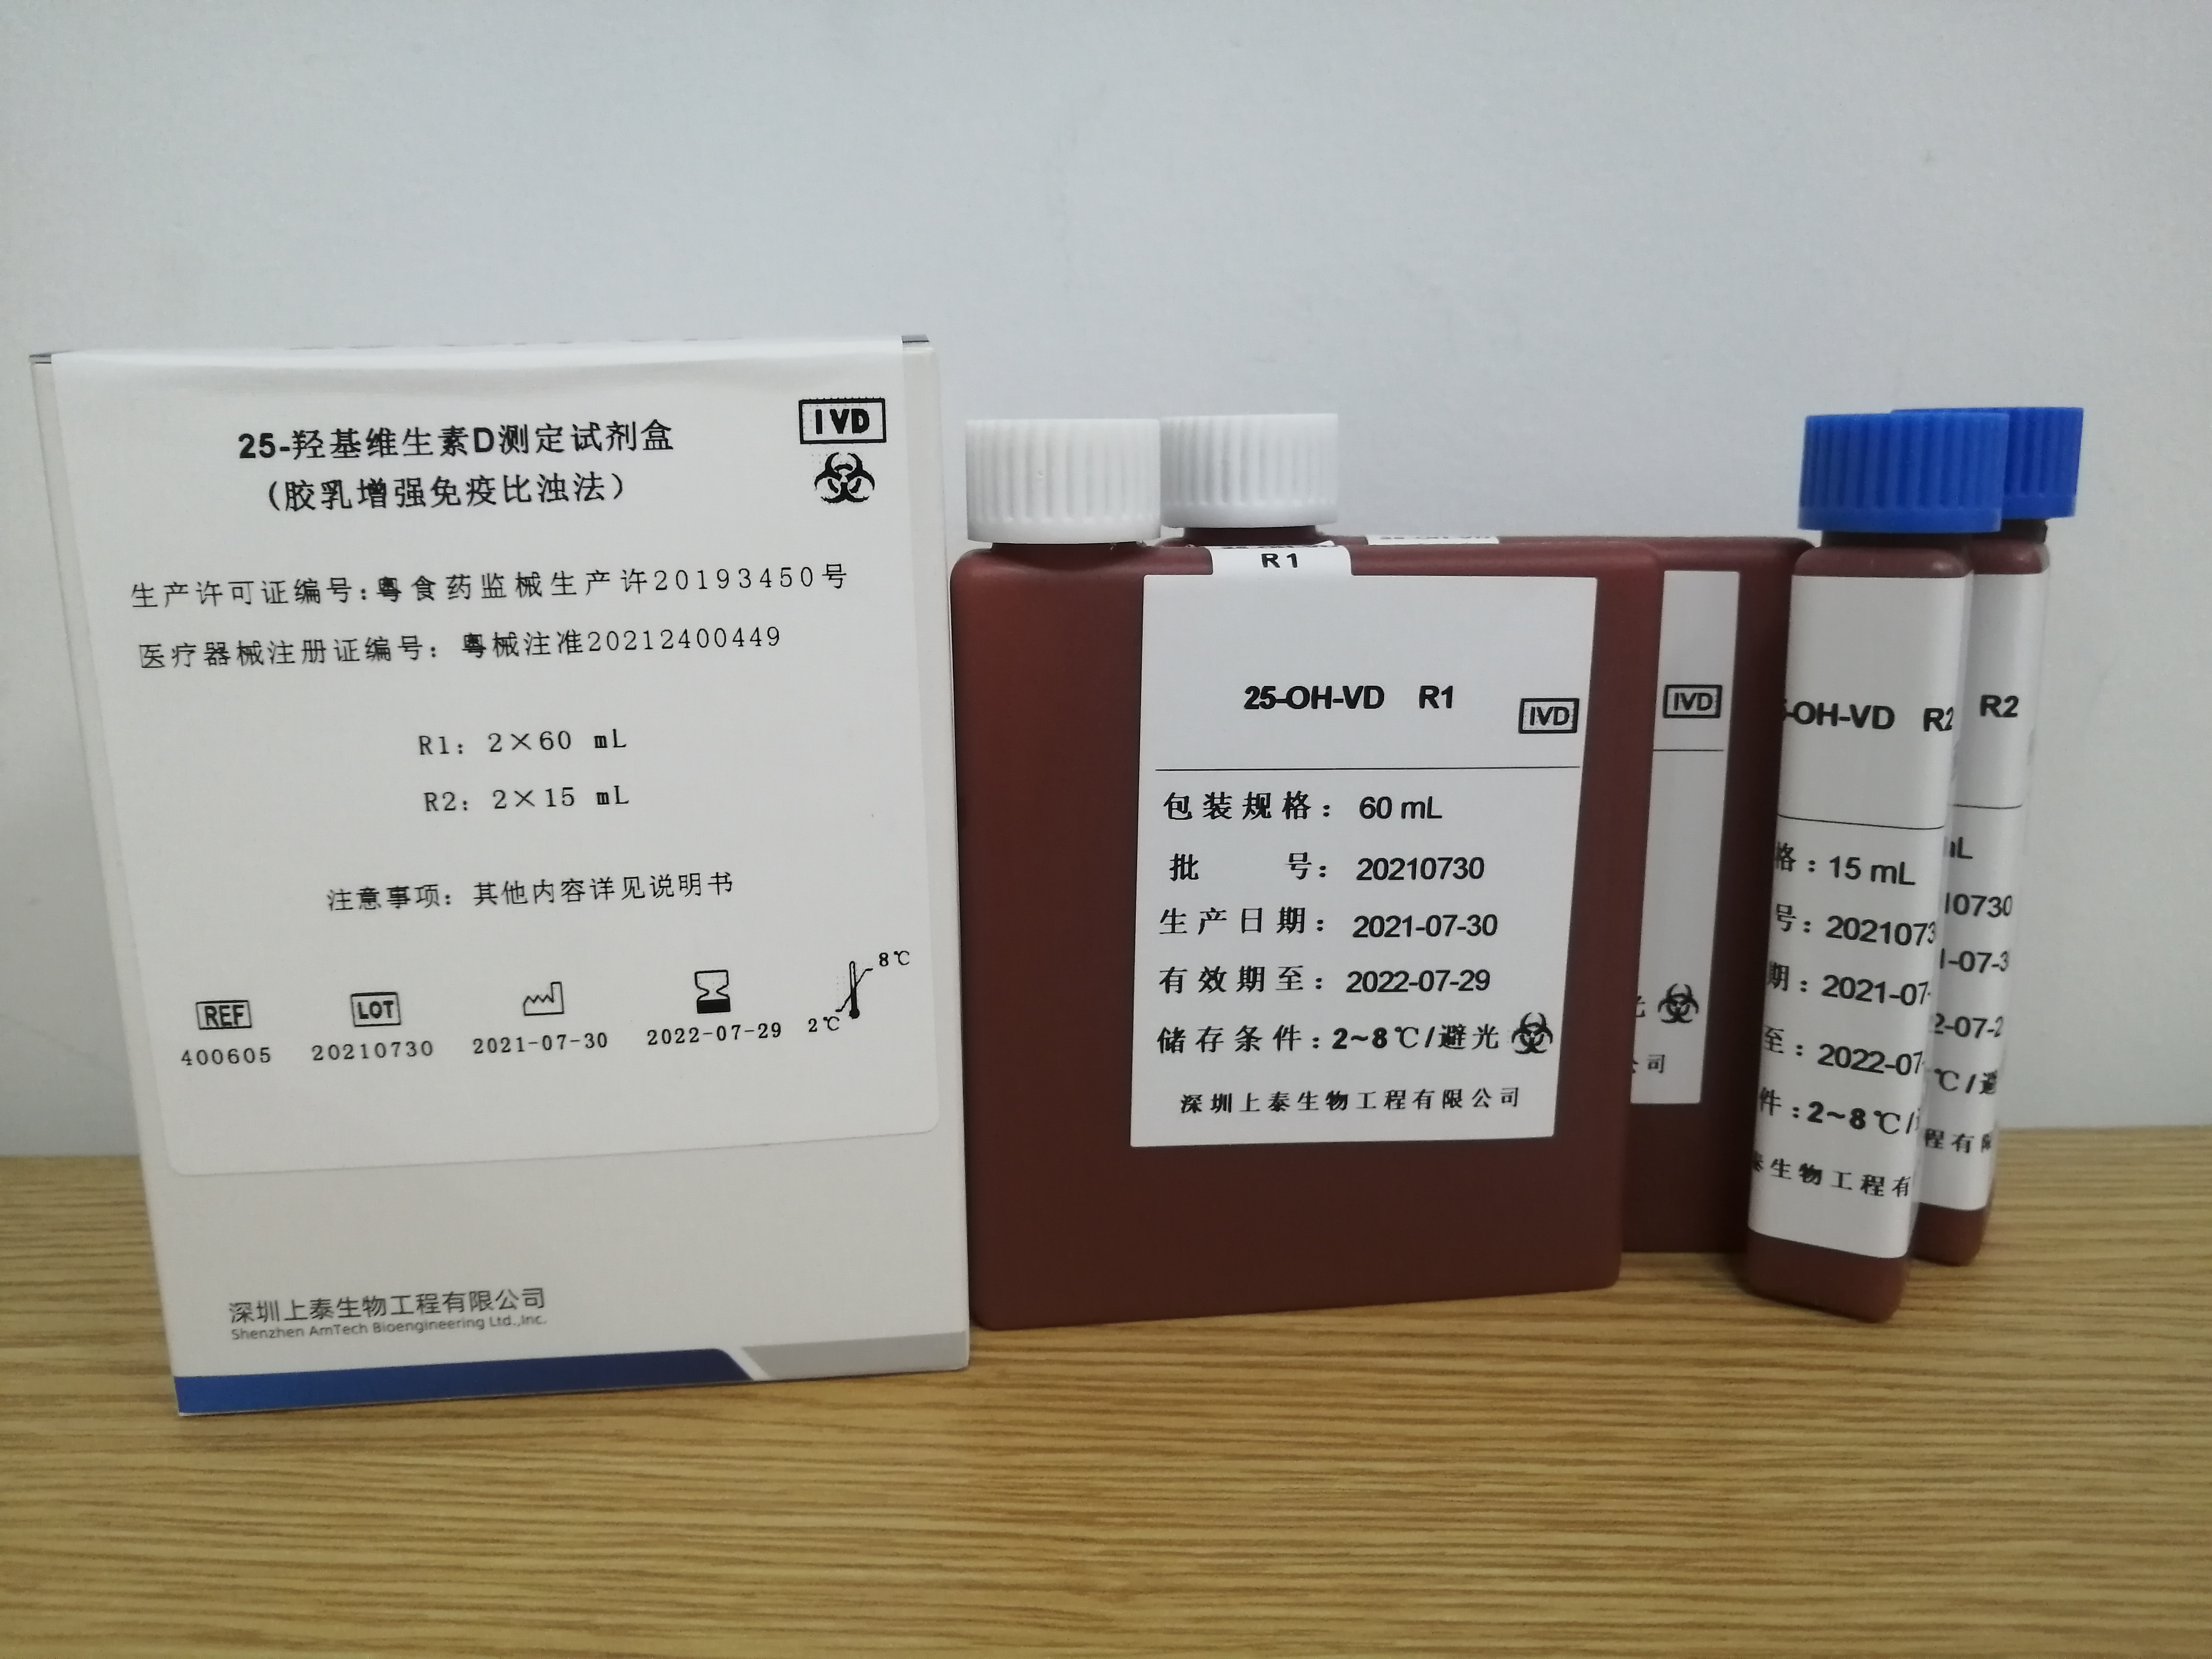 【深圳上泰】25-羟基维生素D测定试剂盒(胶乳增强免疫比浊法)